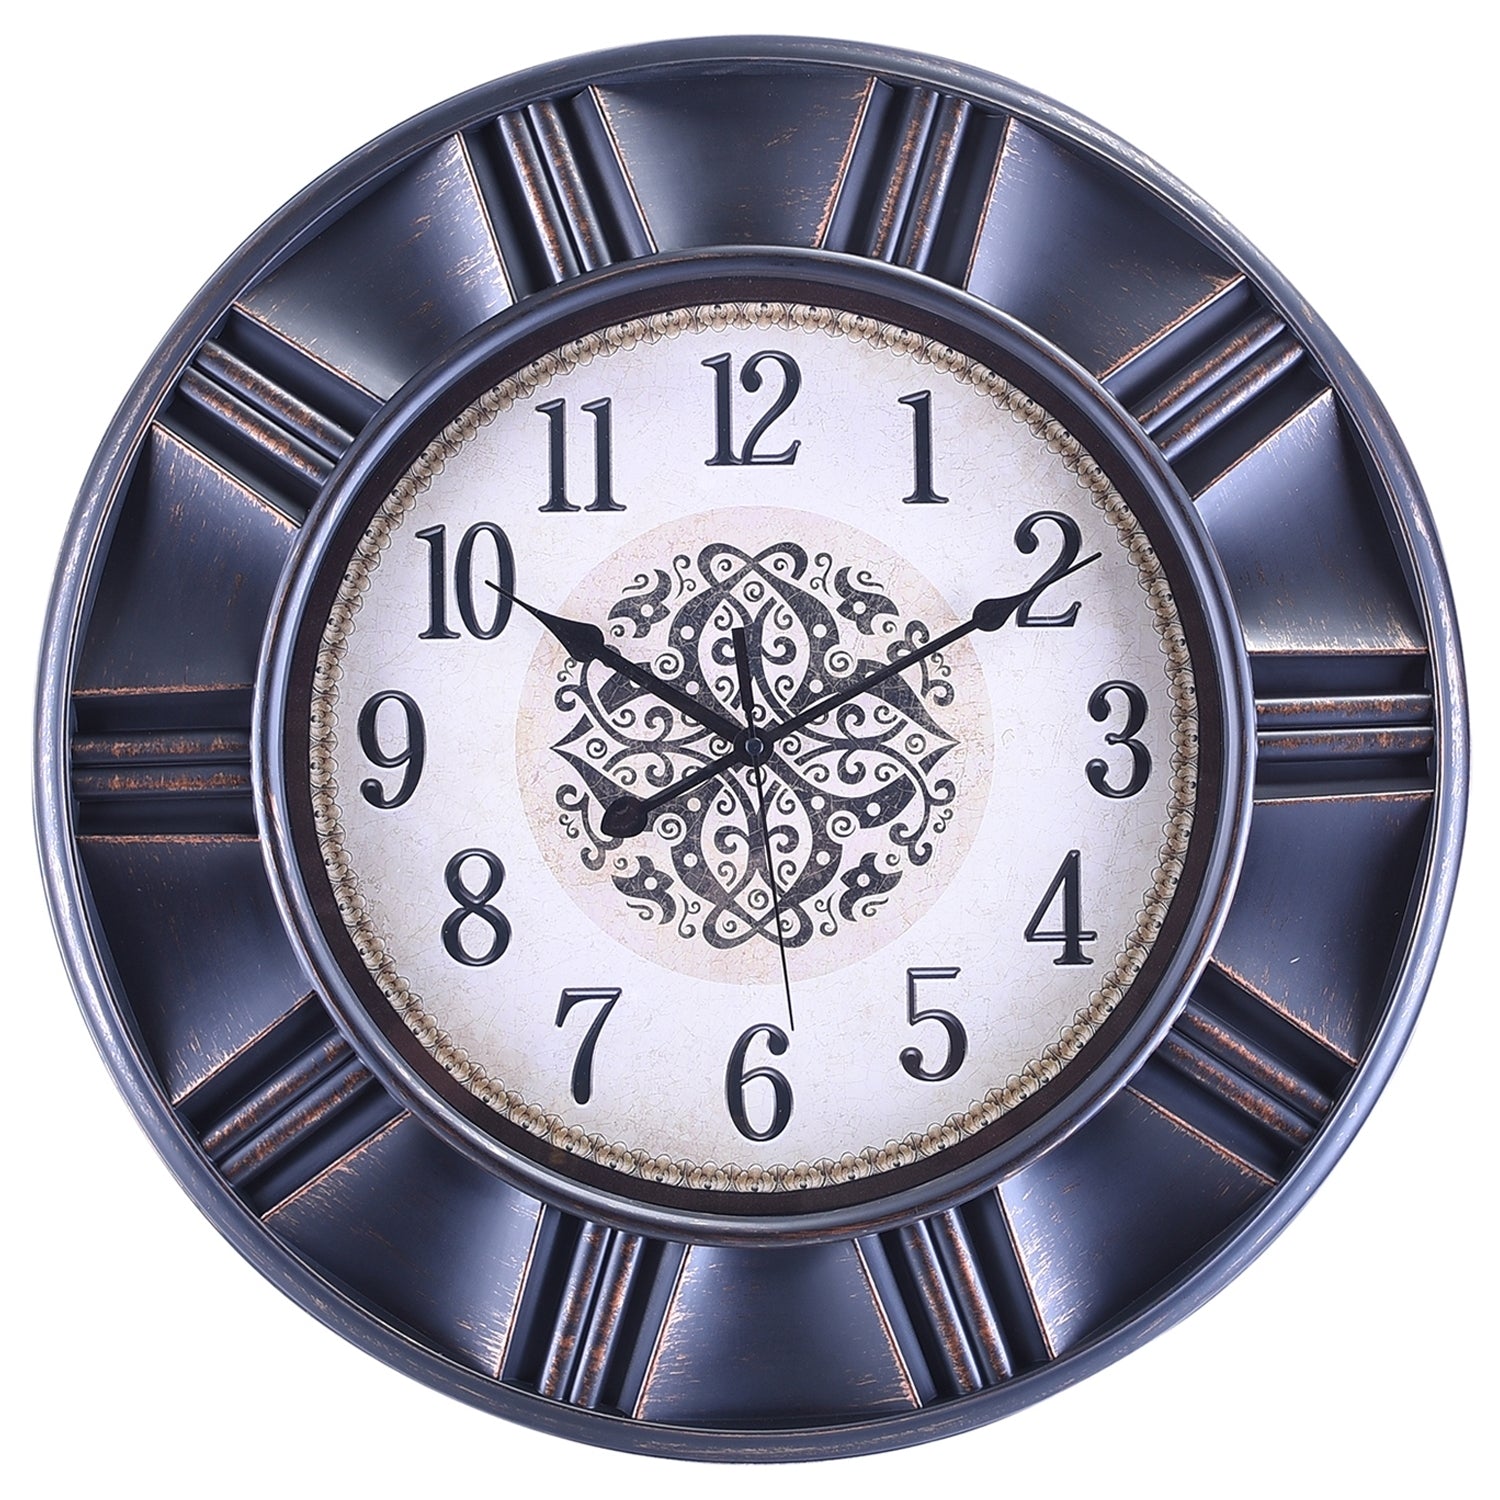 Premium Antique Design Analog Wall Clock 24